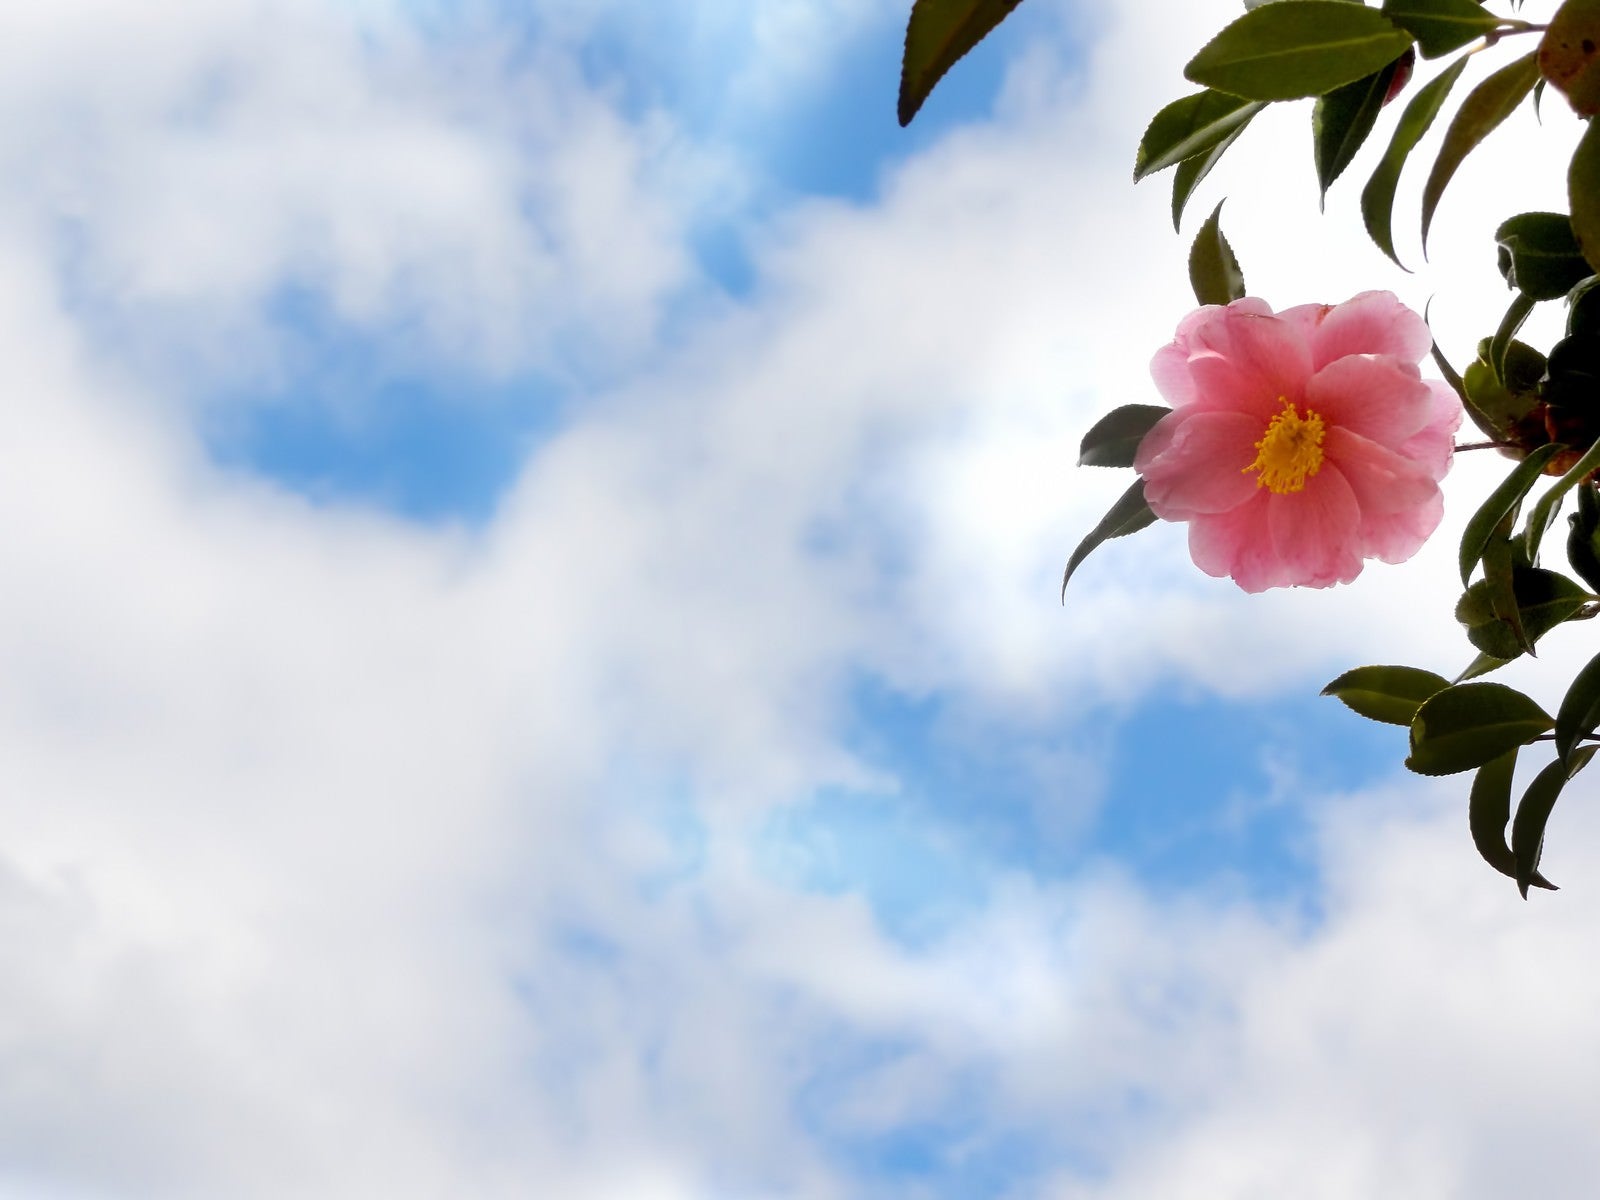 「青空と椿の花」の写真